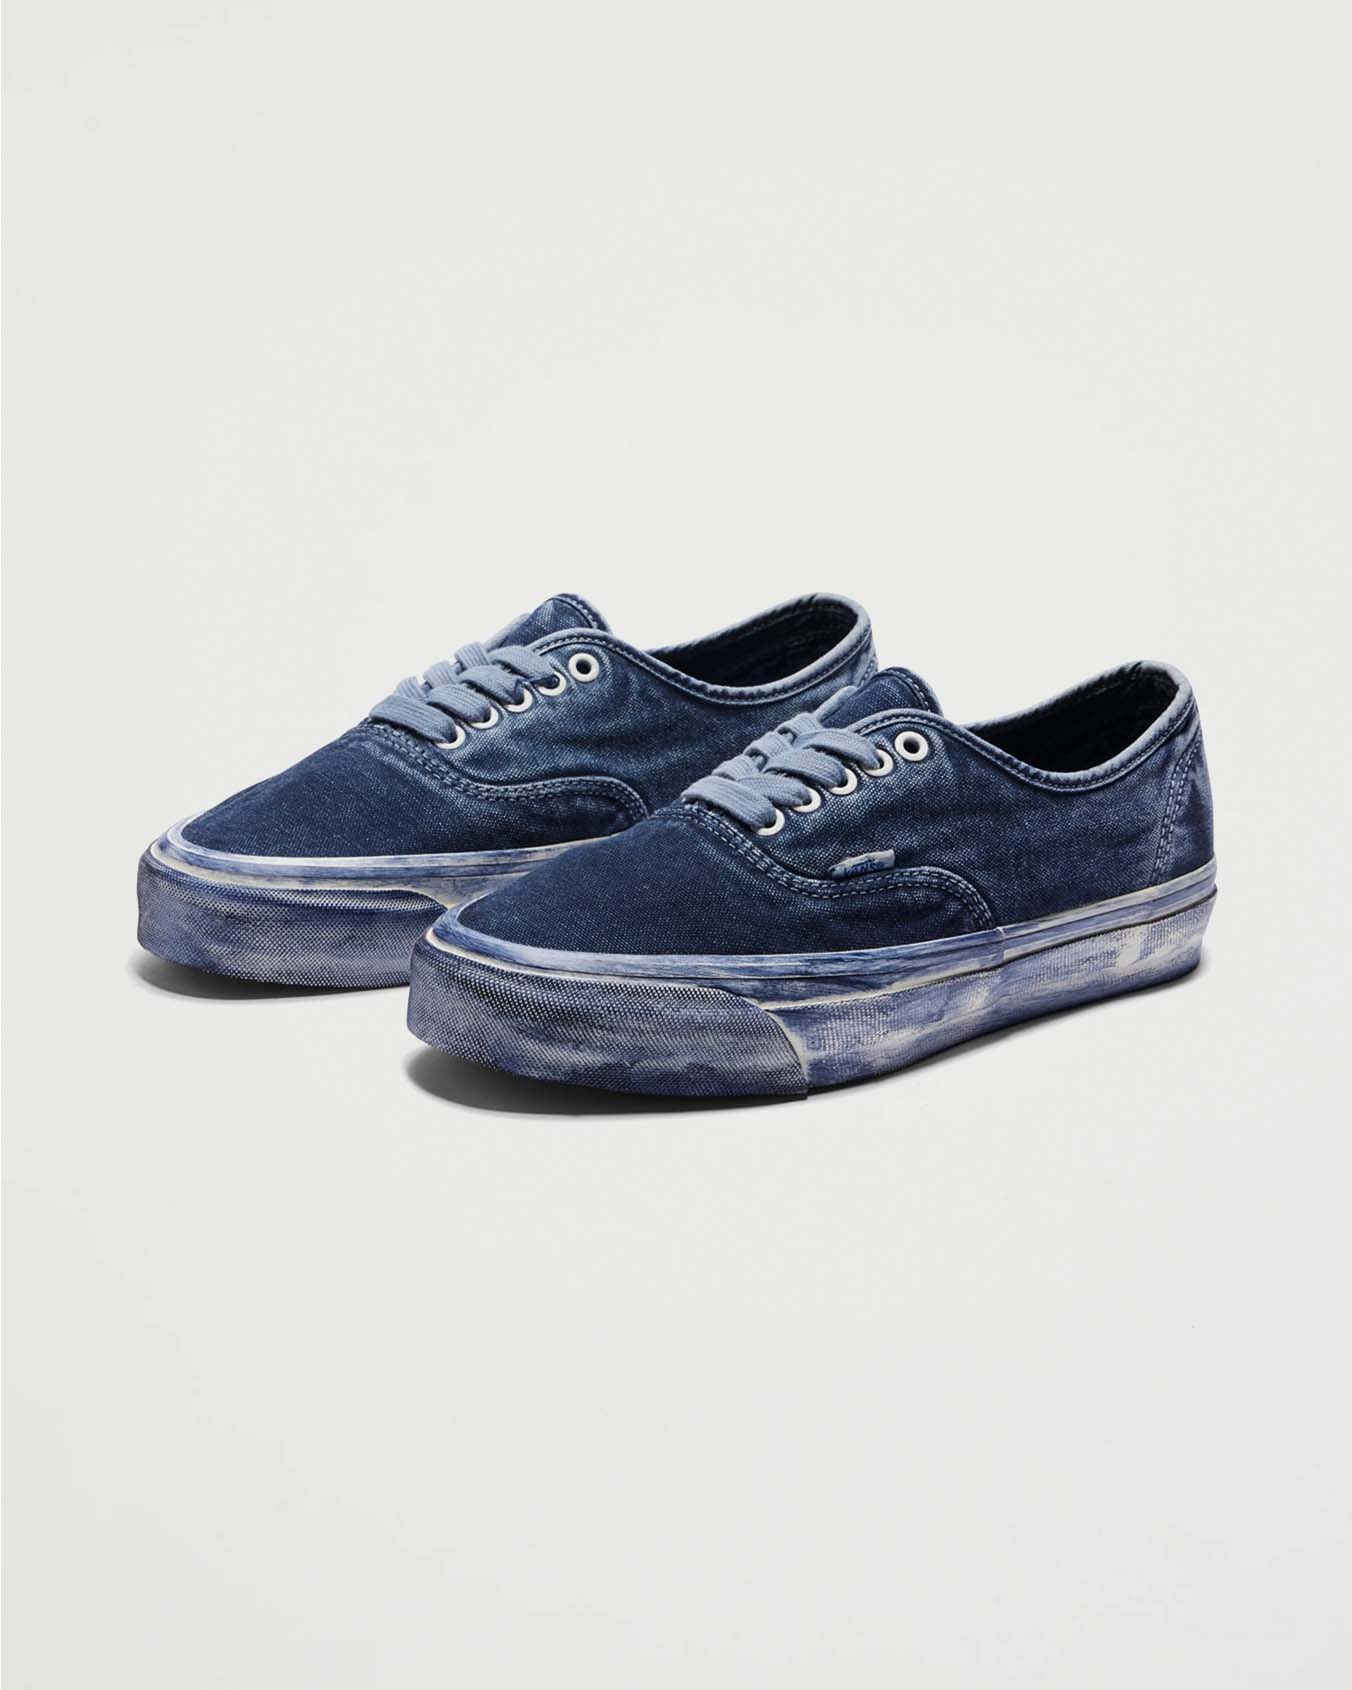 Vans Premium Authentic Reissue 44 LX Dip Dye Dress Blues Shoes Sneakers Men